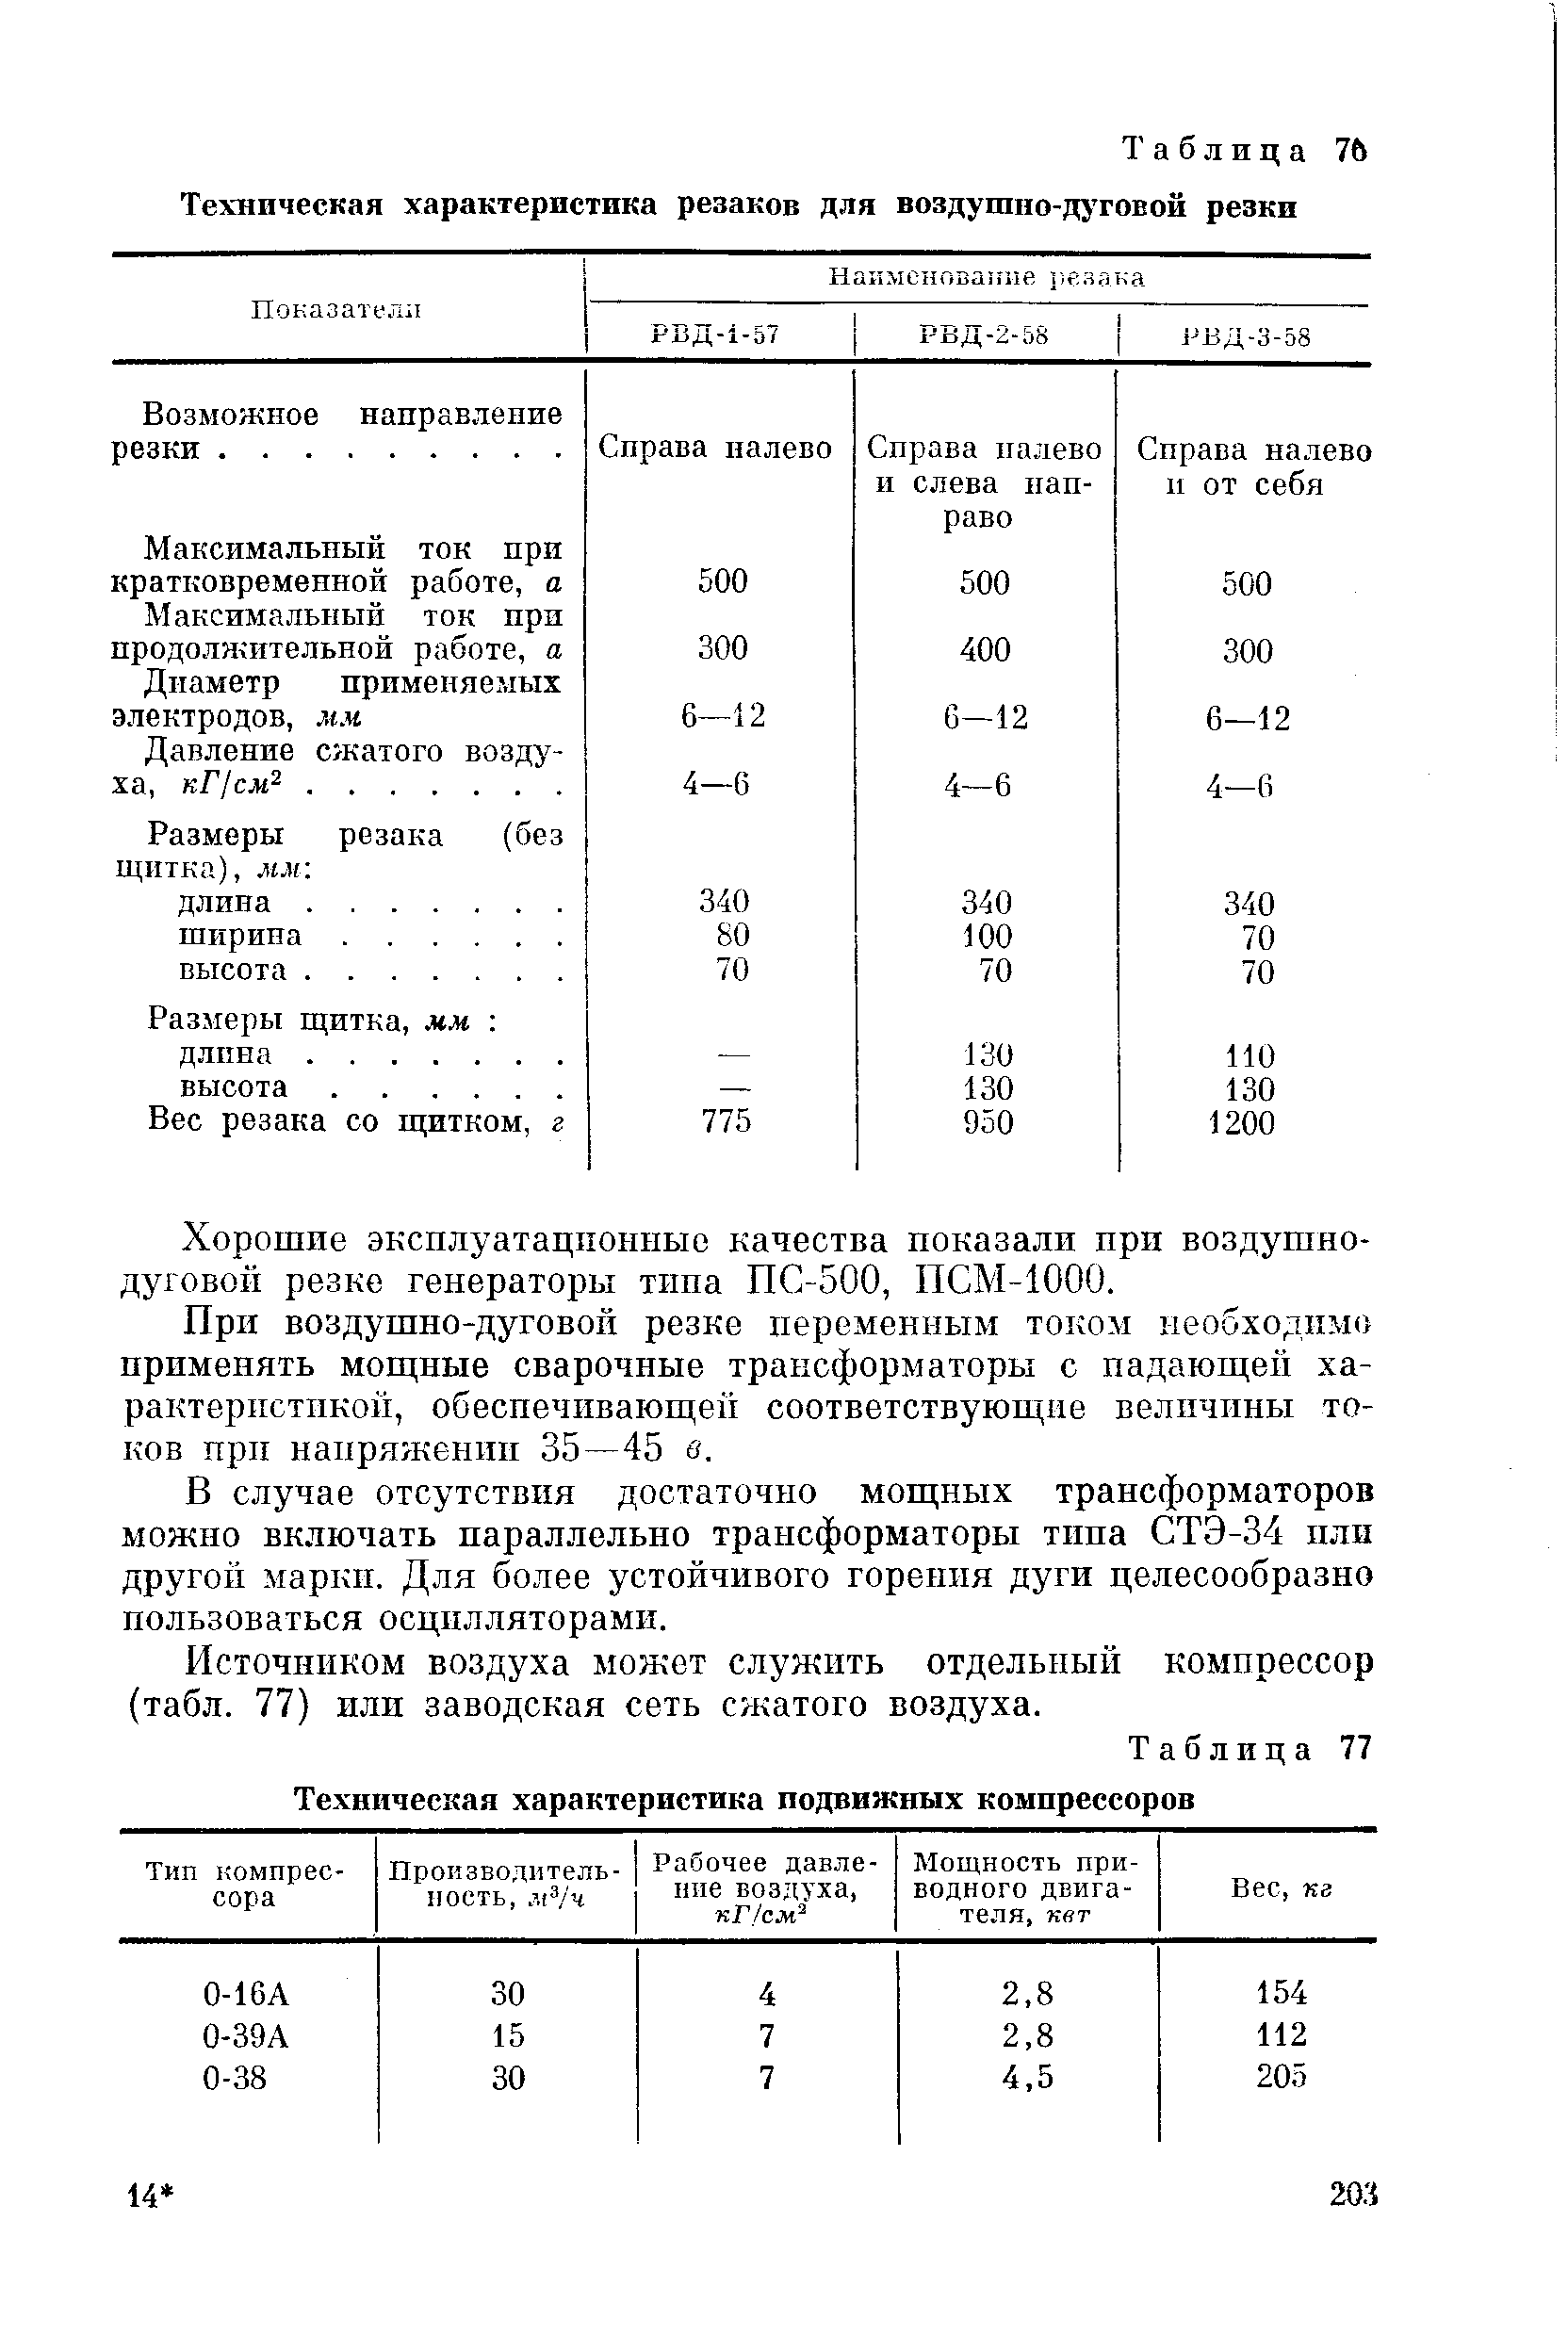 Таблица 77 Техническая характеристика подвижных компрессоров
